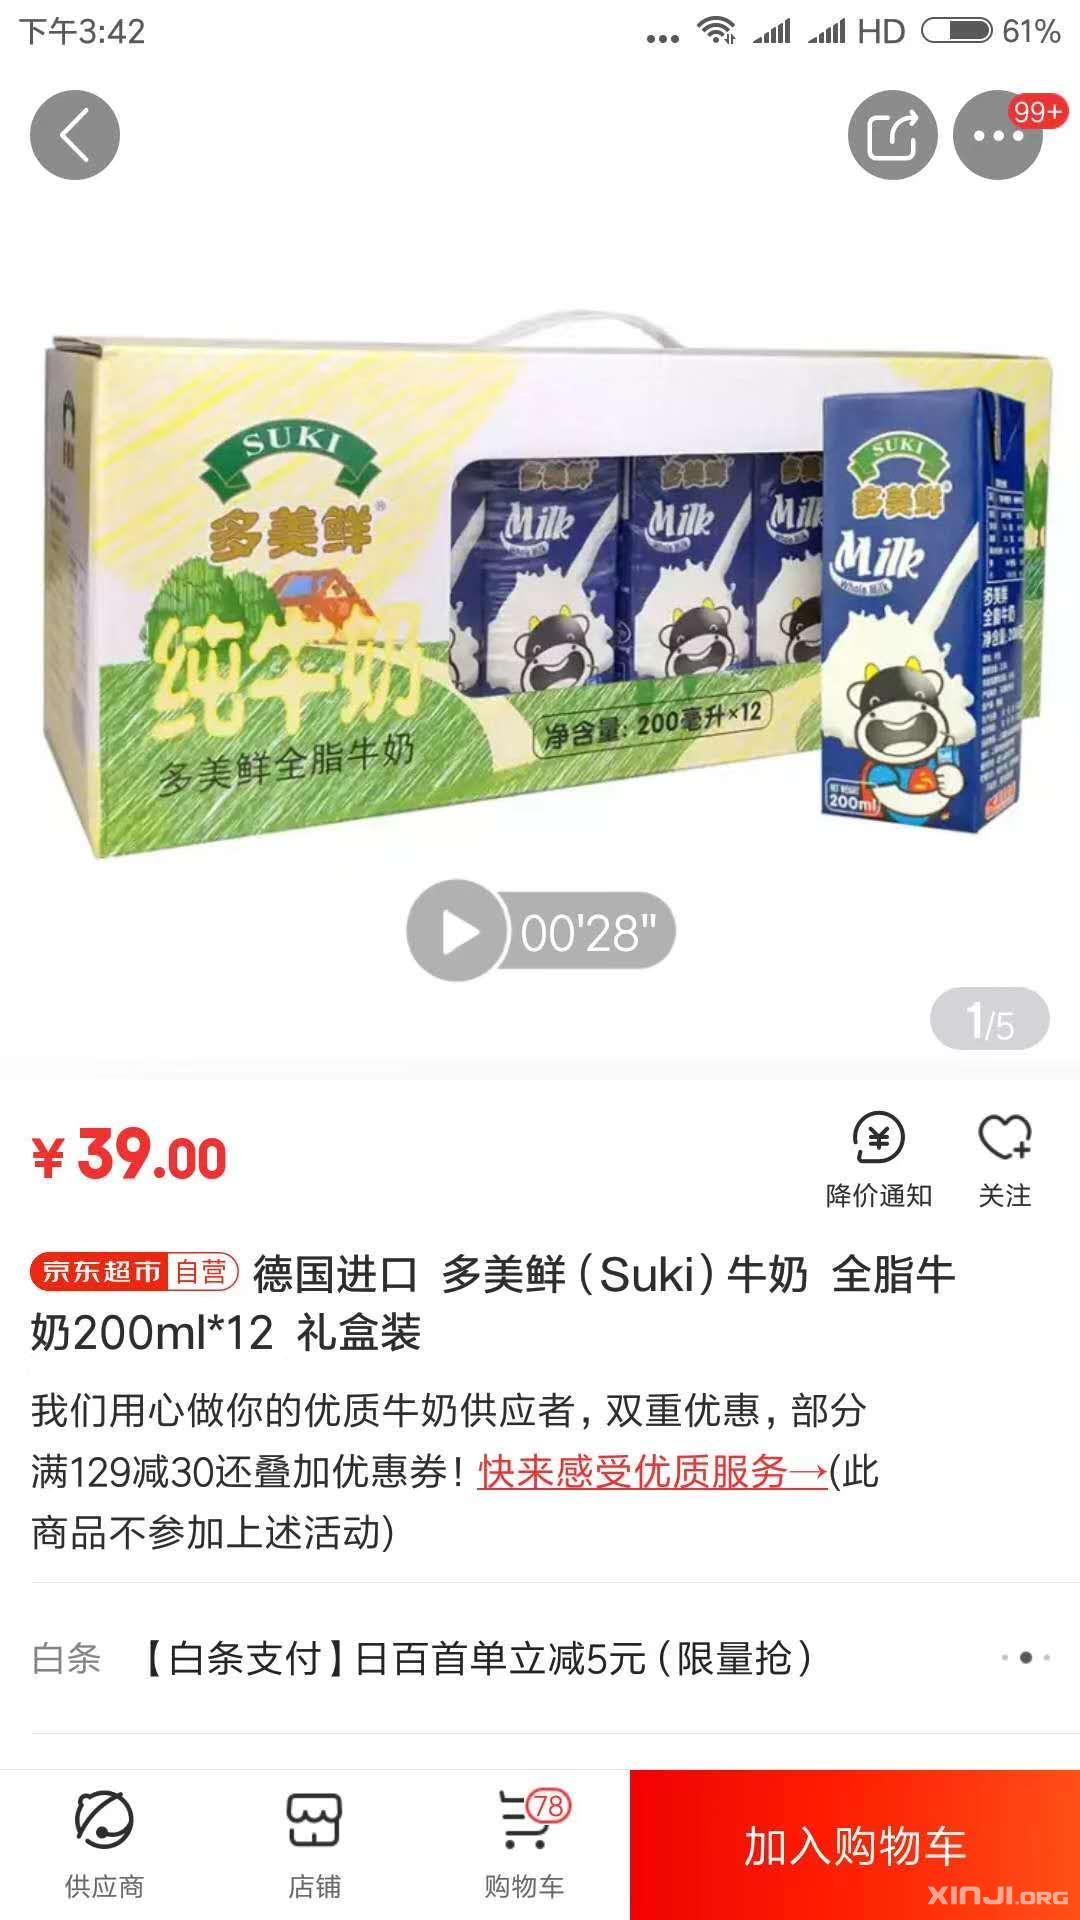 京东超市 天猫超市秒杀商品 超低价 有需要的电